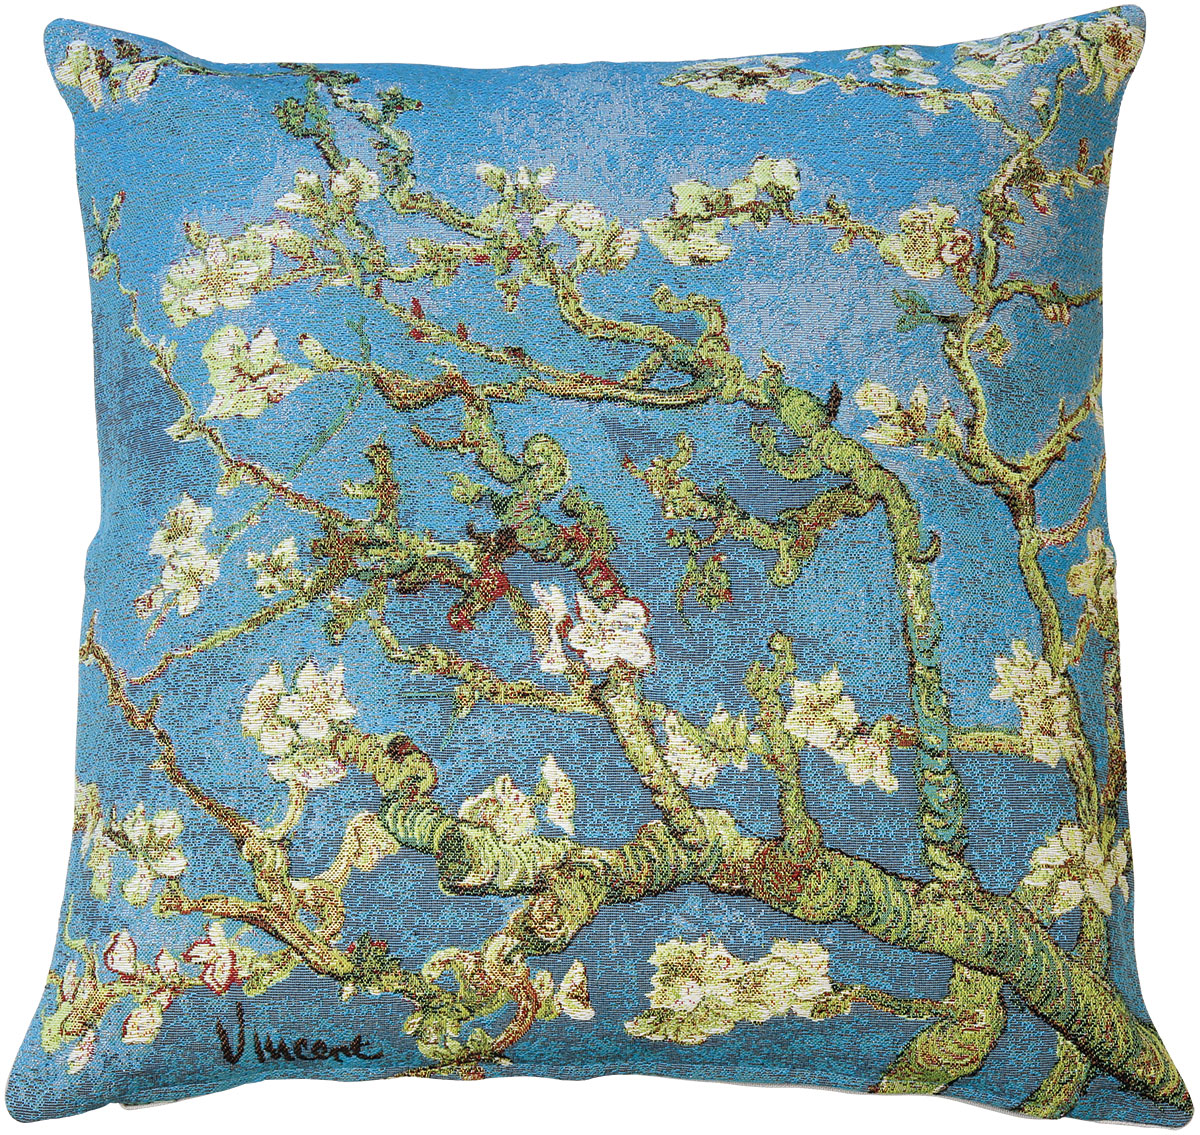 Kissenhülle "Blühende Mandelbaumzweige" von Vincent van Gogh